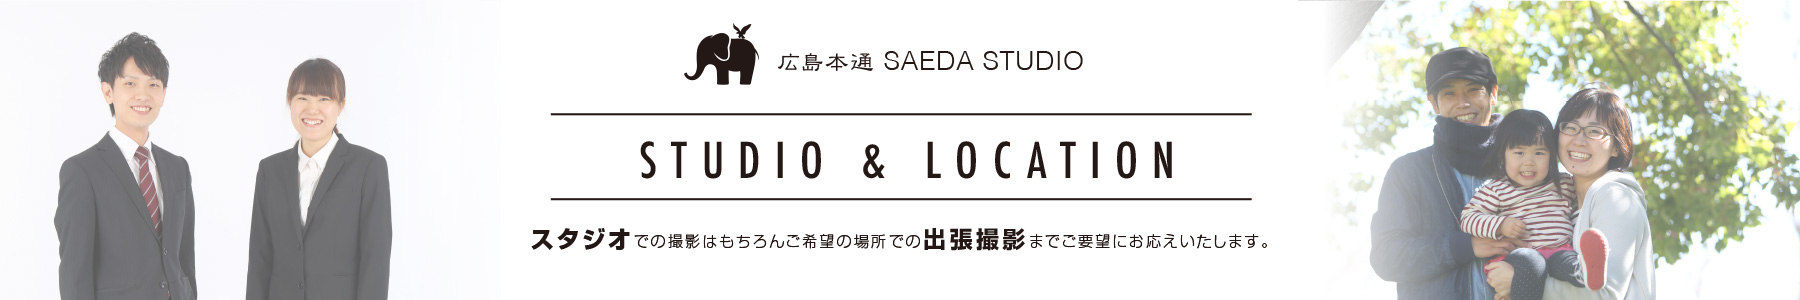 広島本通 SAEDA STUDIO
スタジオでの撮影はもちろんご希望の場所での出張撮影までご要望にお応えいたします。